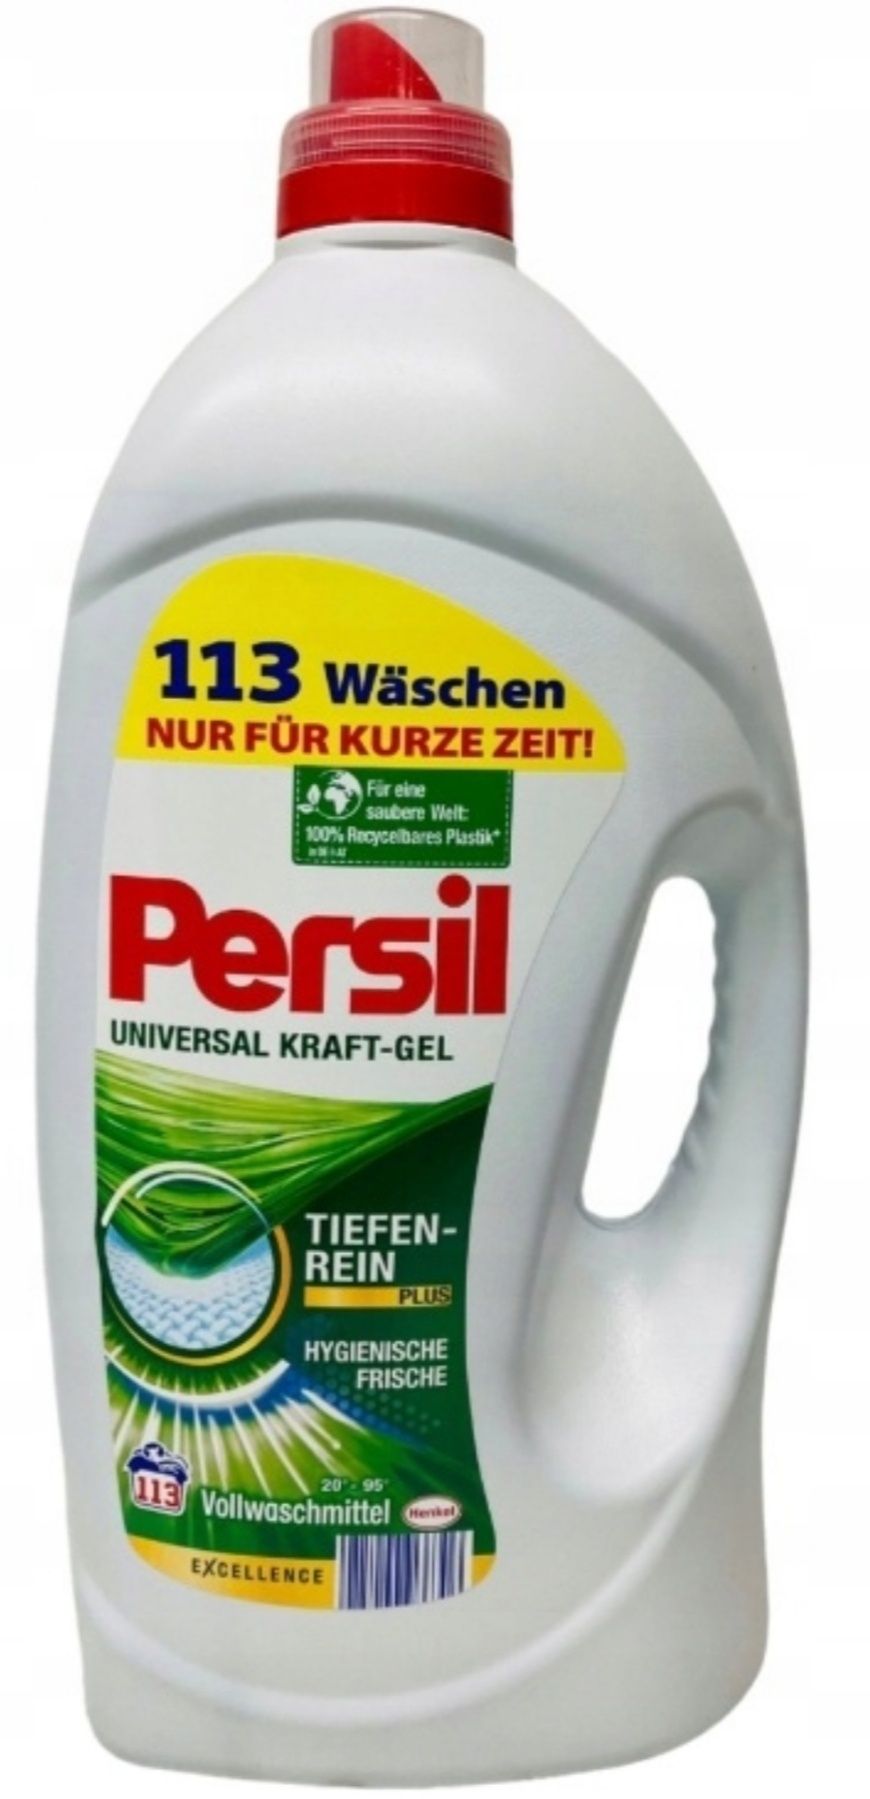 Niemiecki Żel do prania Persil uniwersalny 5,65l 113 prań.